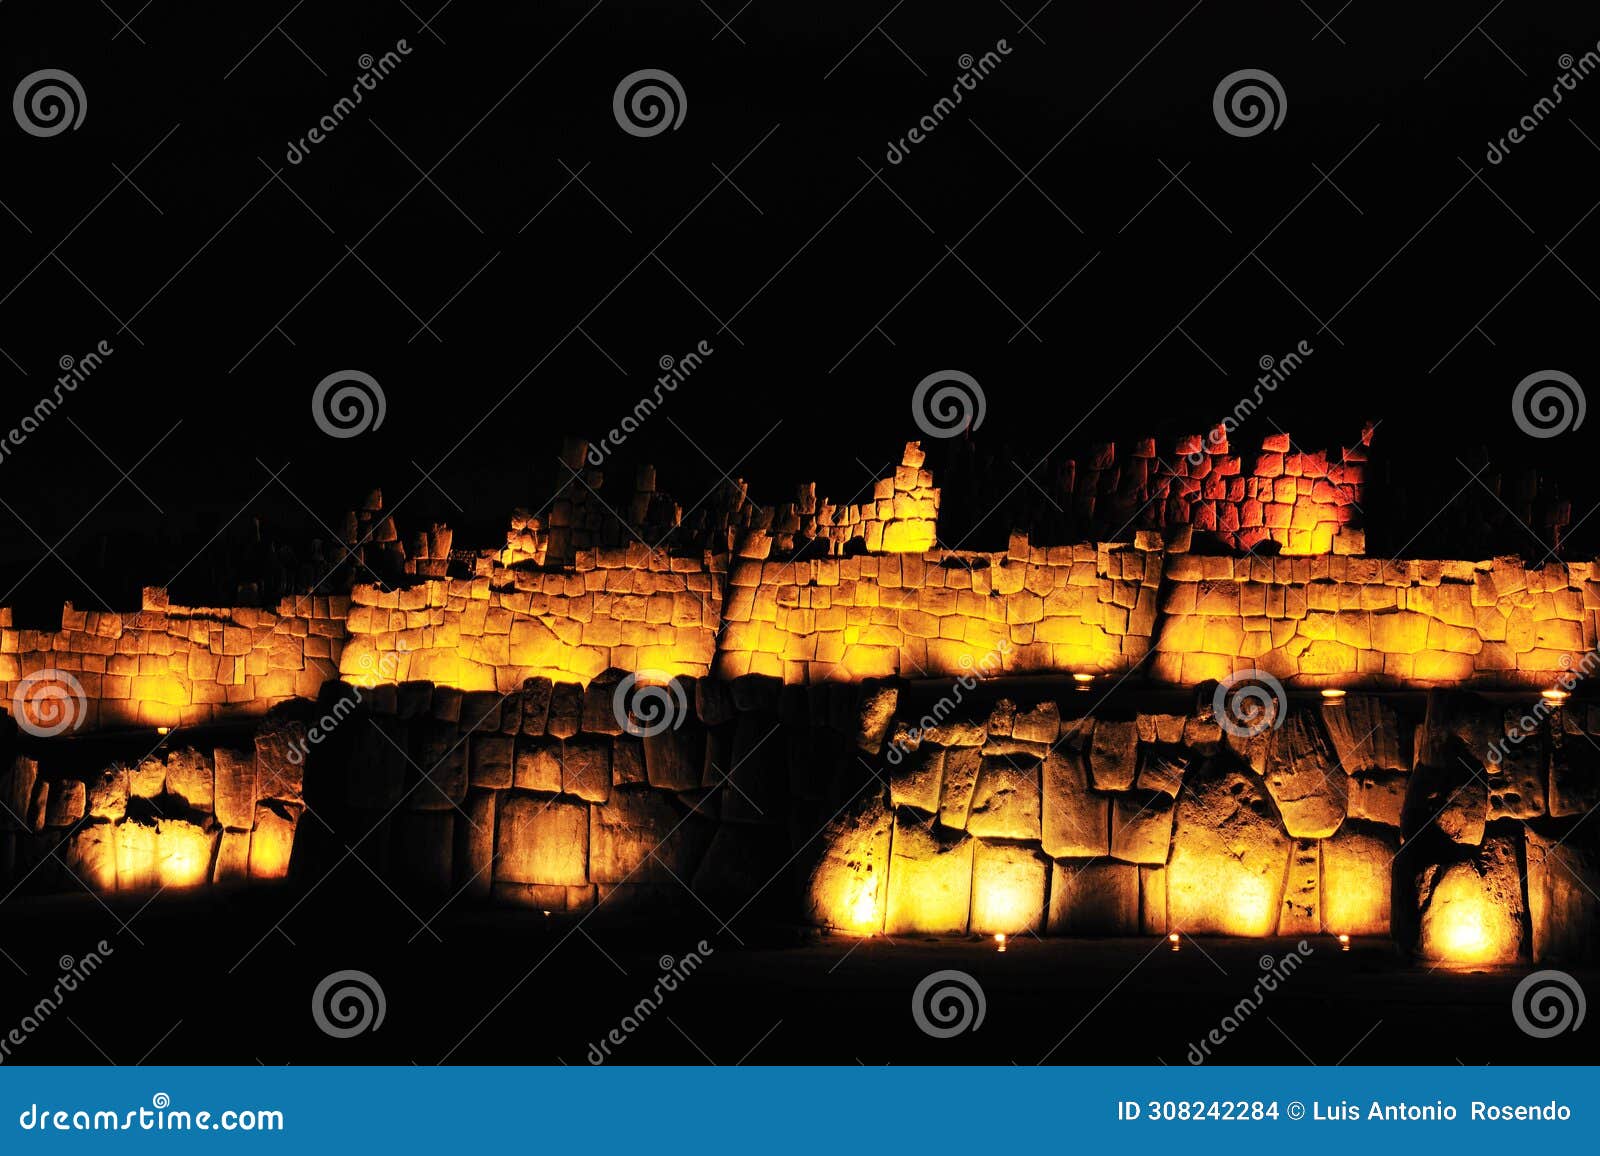 sacsayhuaman, ruinas incas en cusco, per